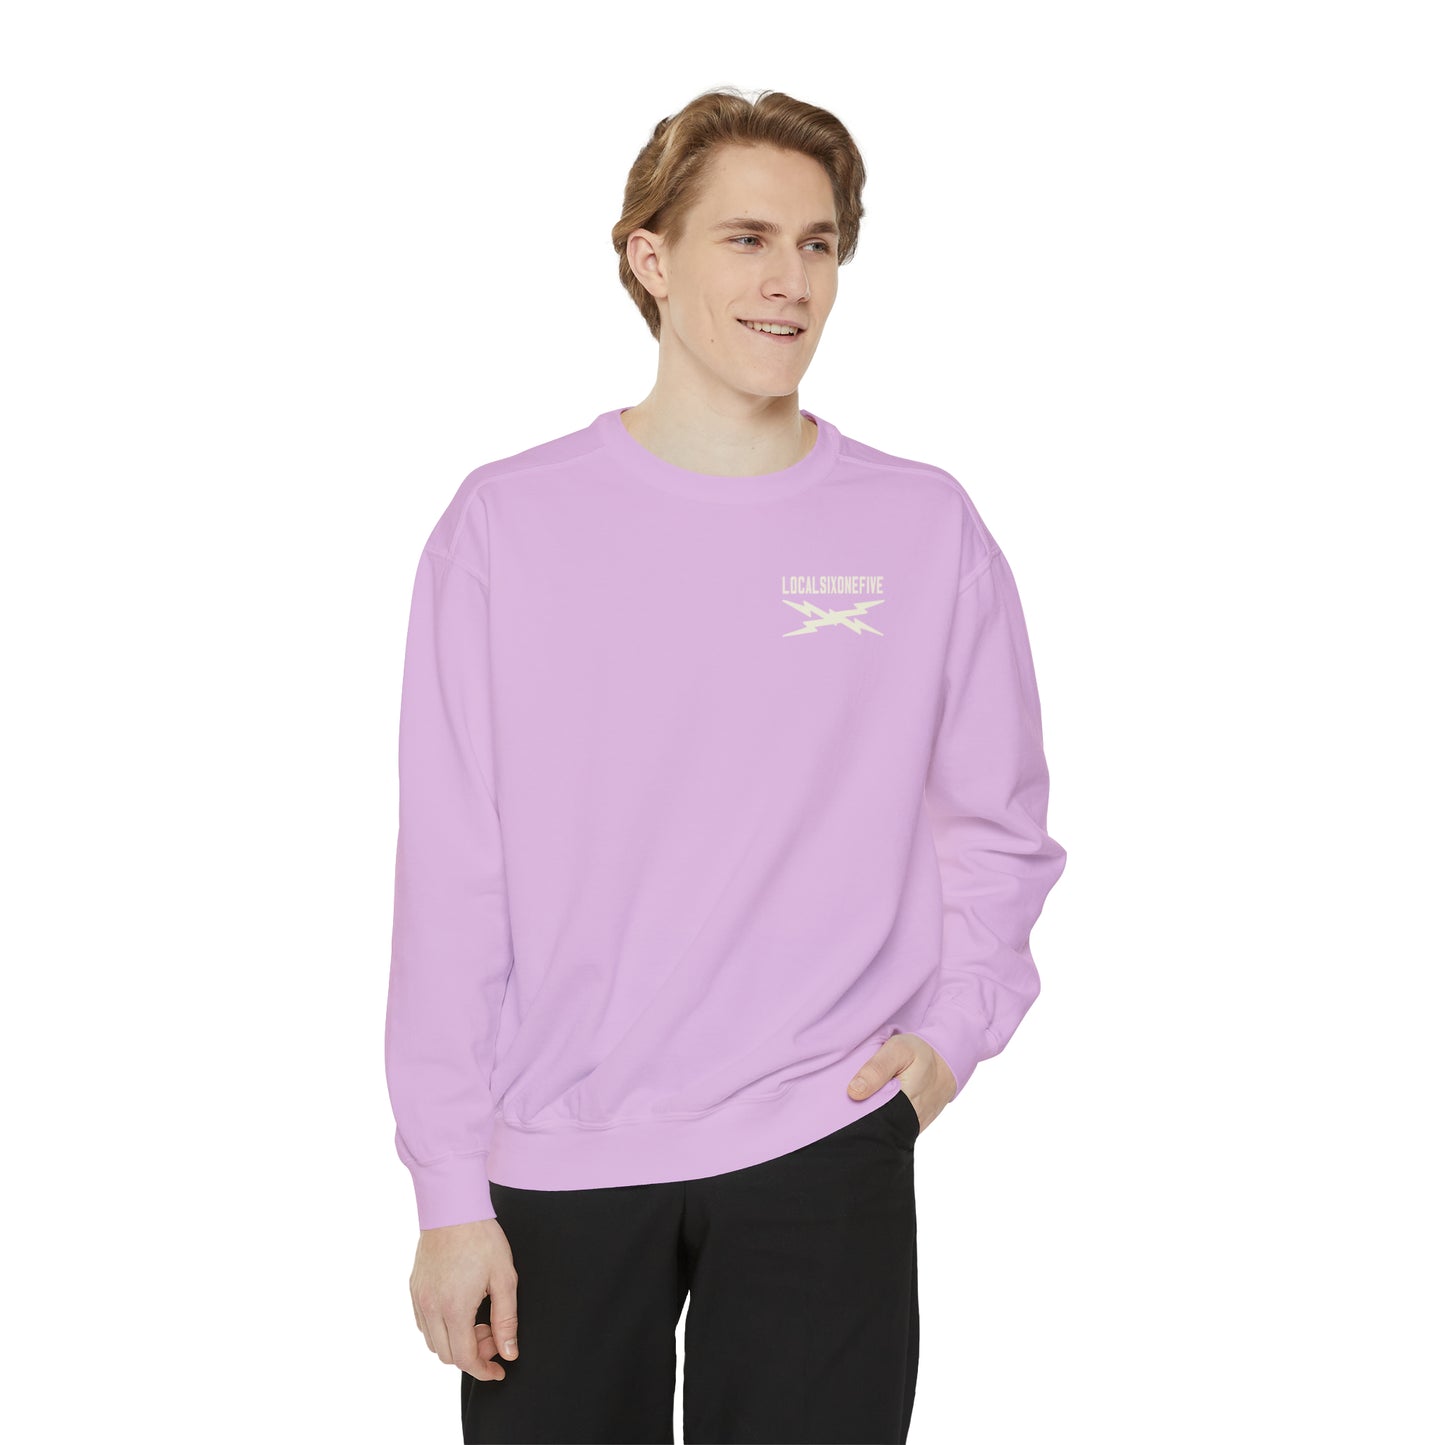 NashTEETH XLongBolts Garment-Dyed Sweatshirt